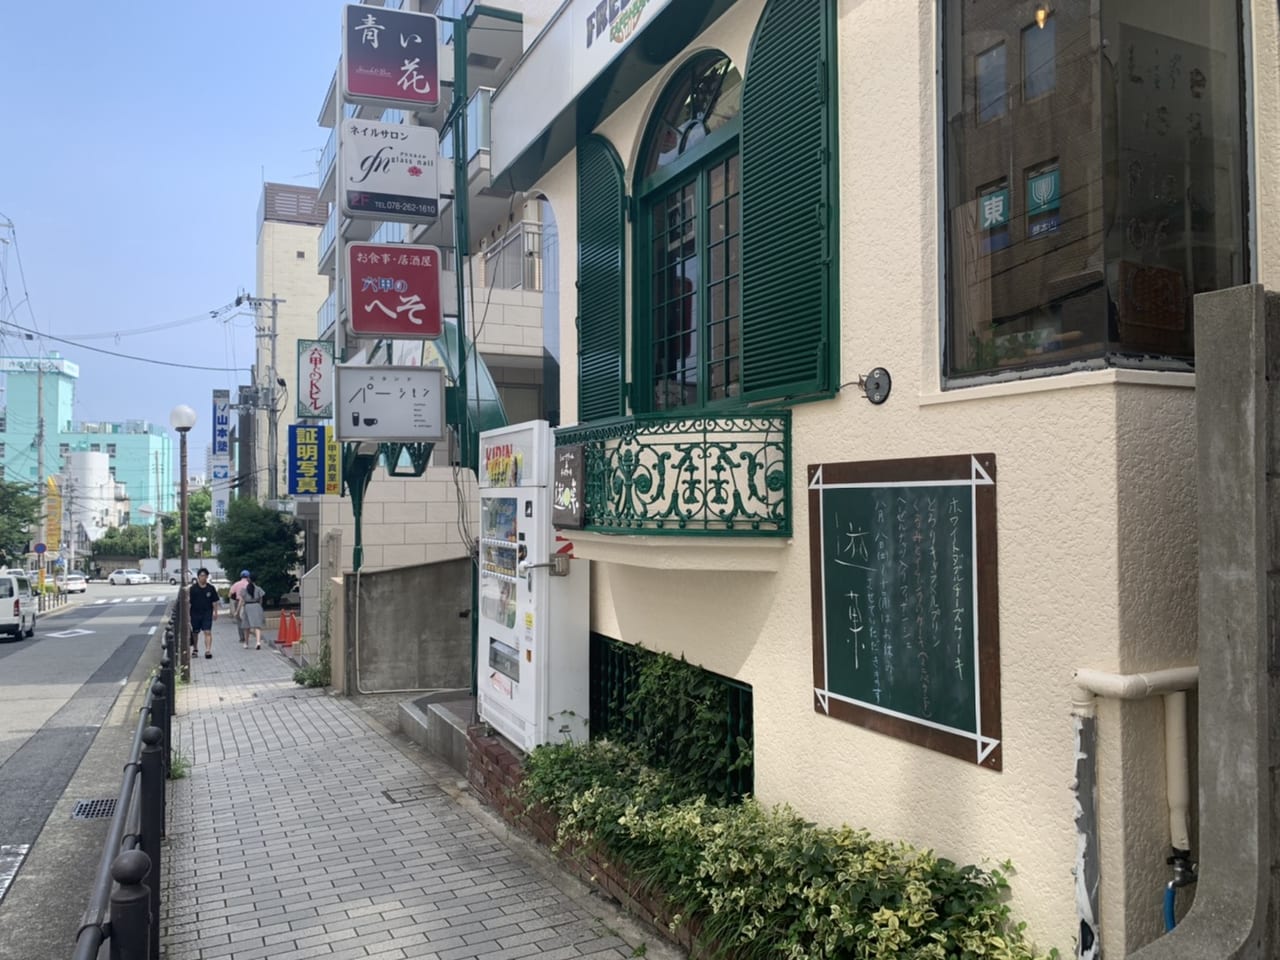 神戸市灘区 映える過ぎる こだわり カフェキリム Cafe Kirim は スタンドパーシモン 内でランチタイムに新規オープン 号外net 神戸市灘区 東灘区